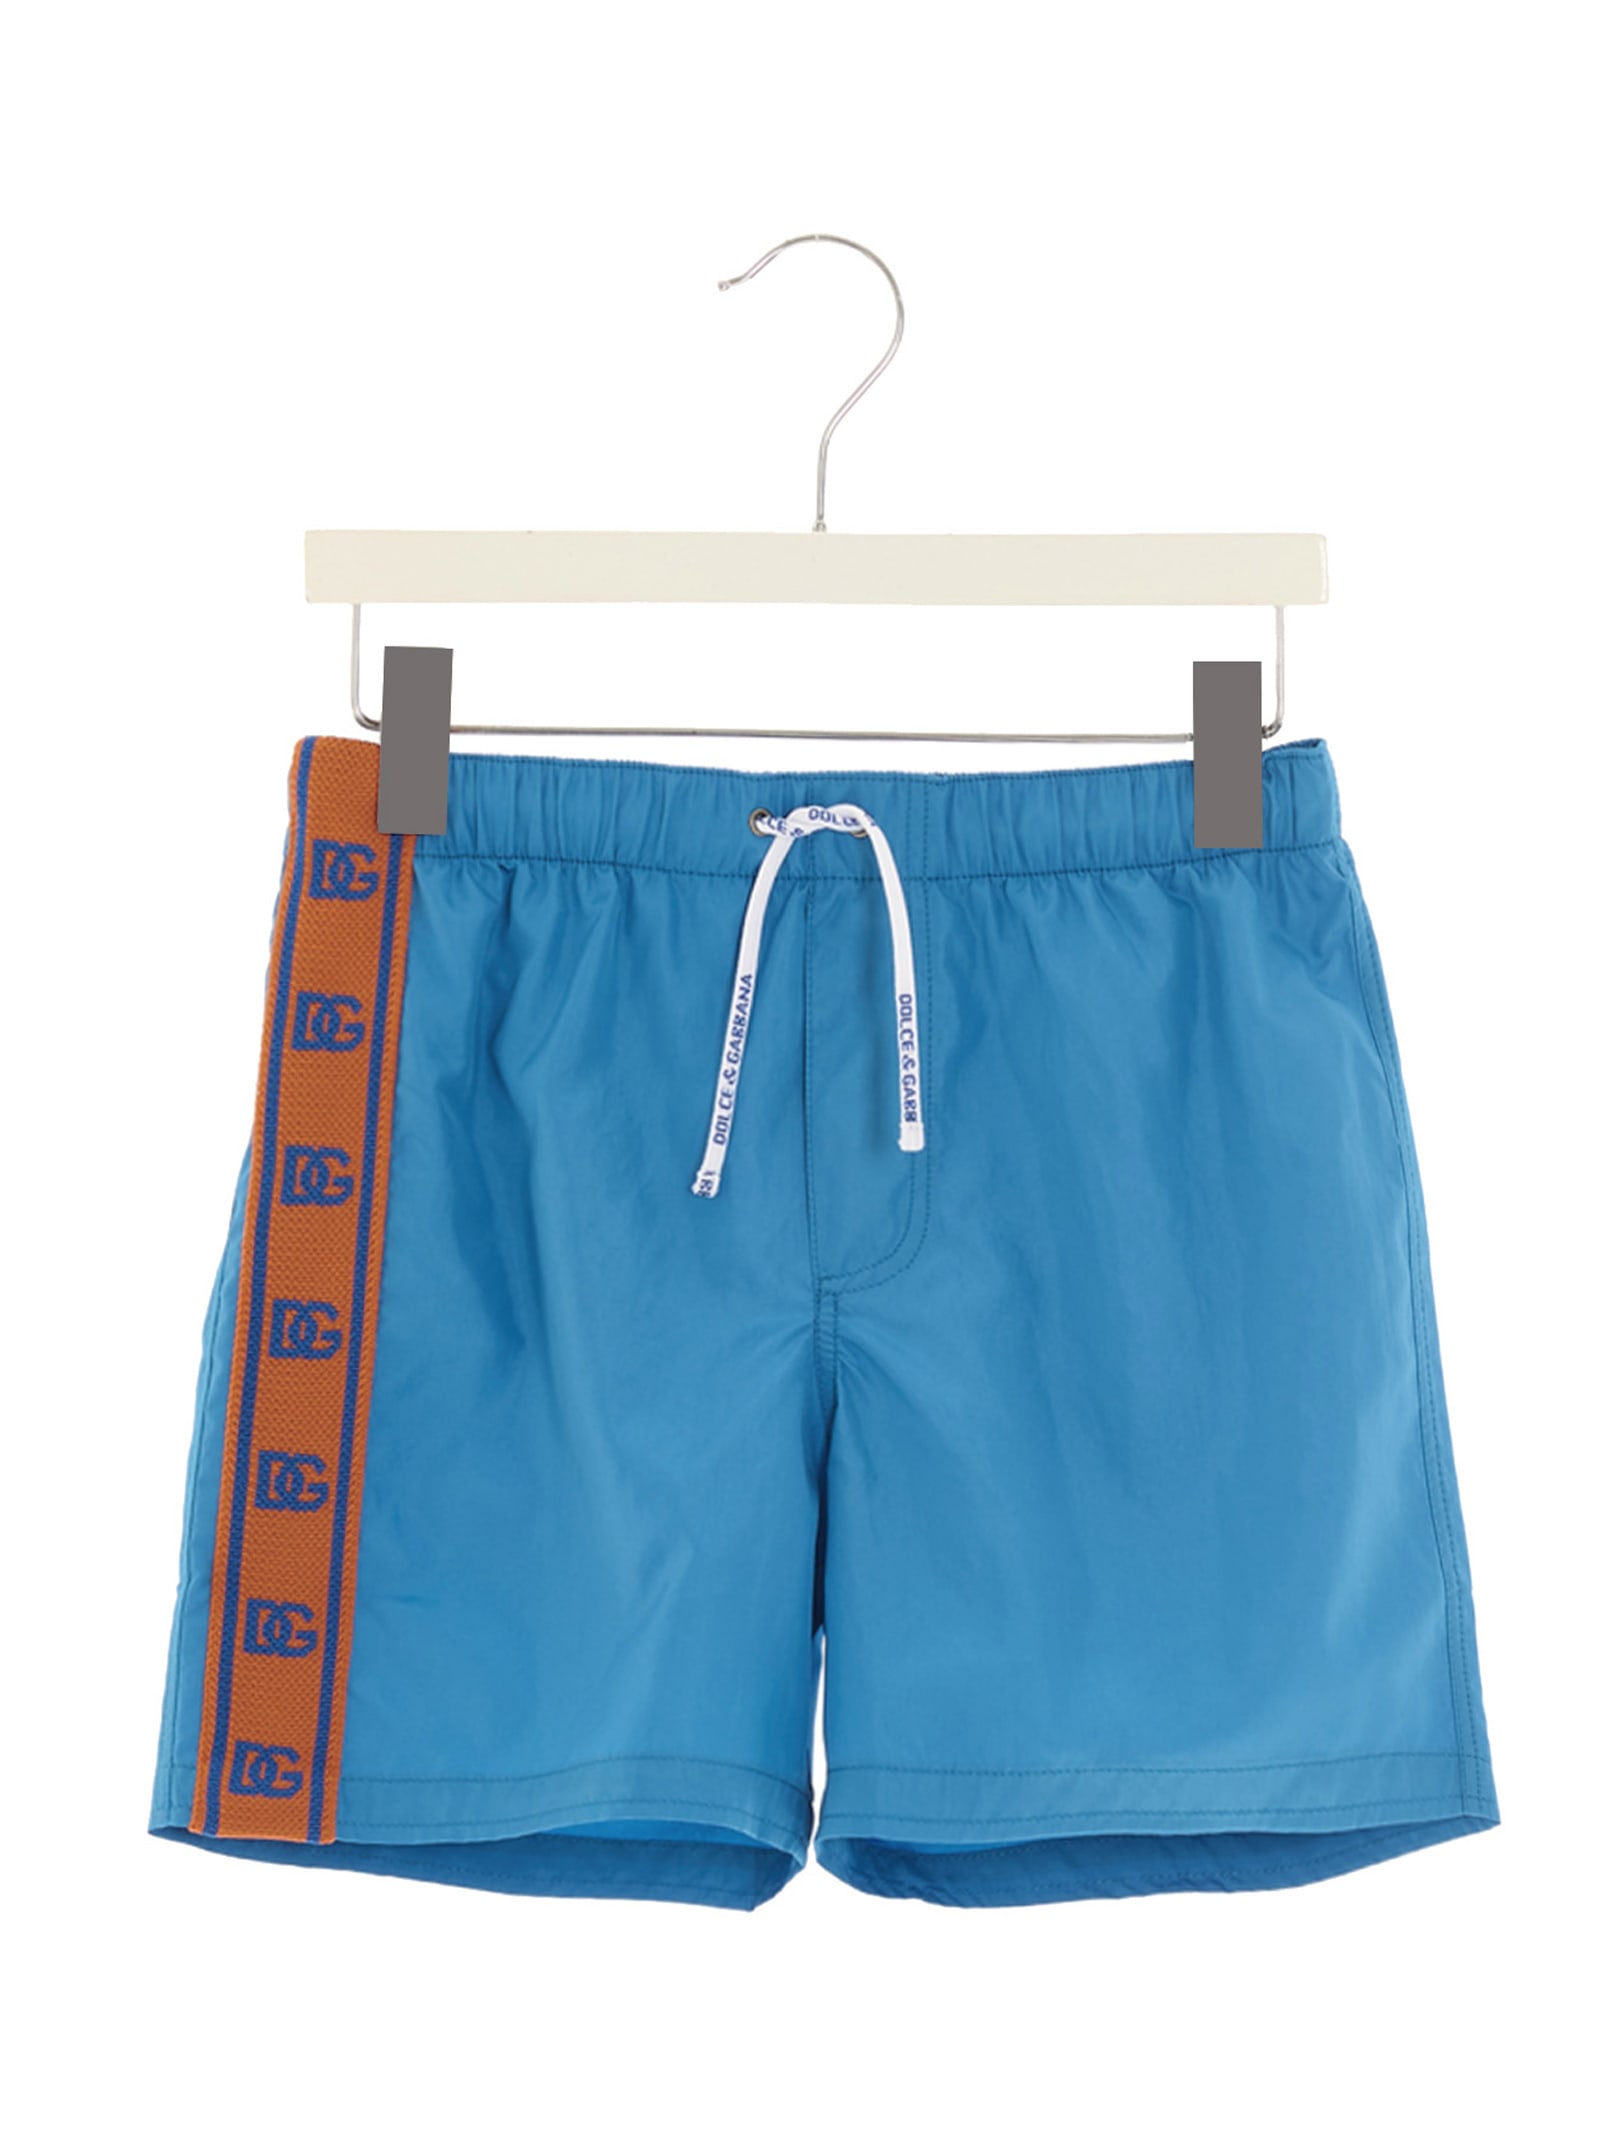 Dolce & Gabbana Side Band Beach Shorts